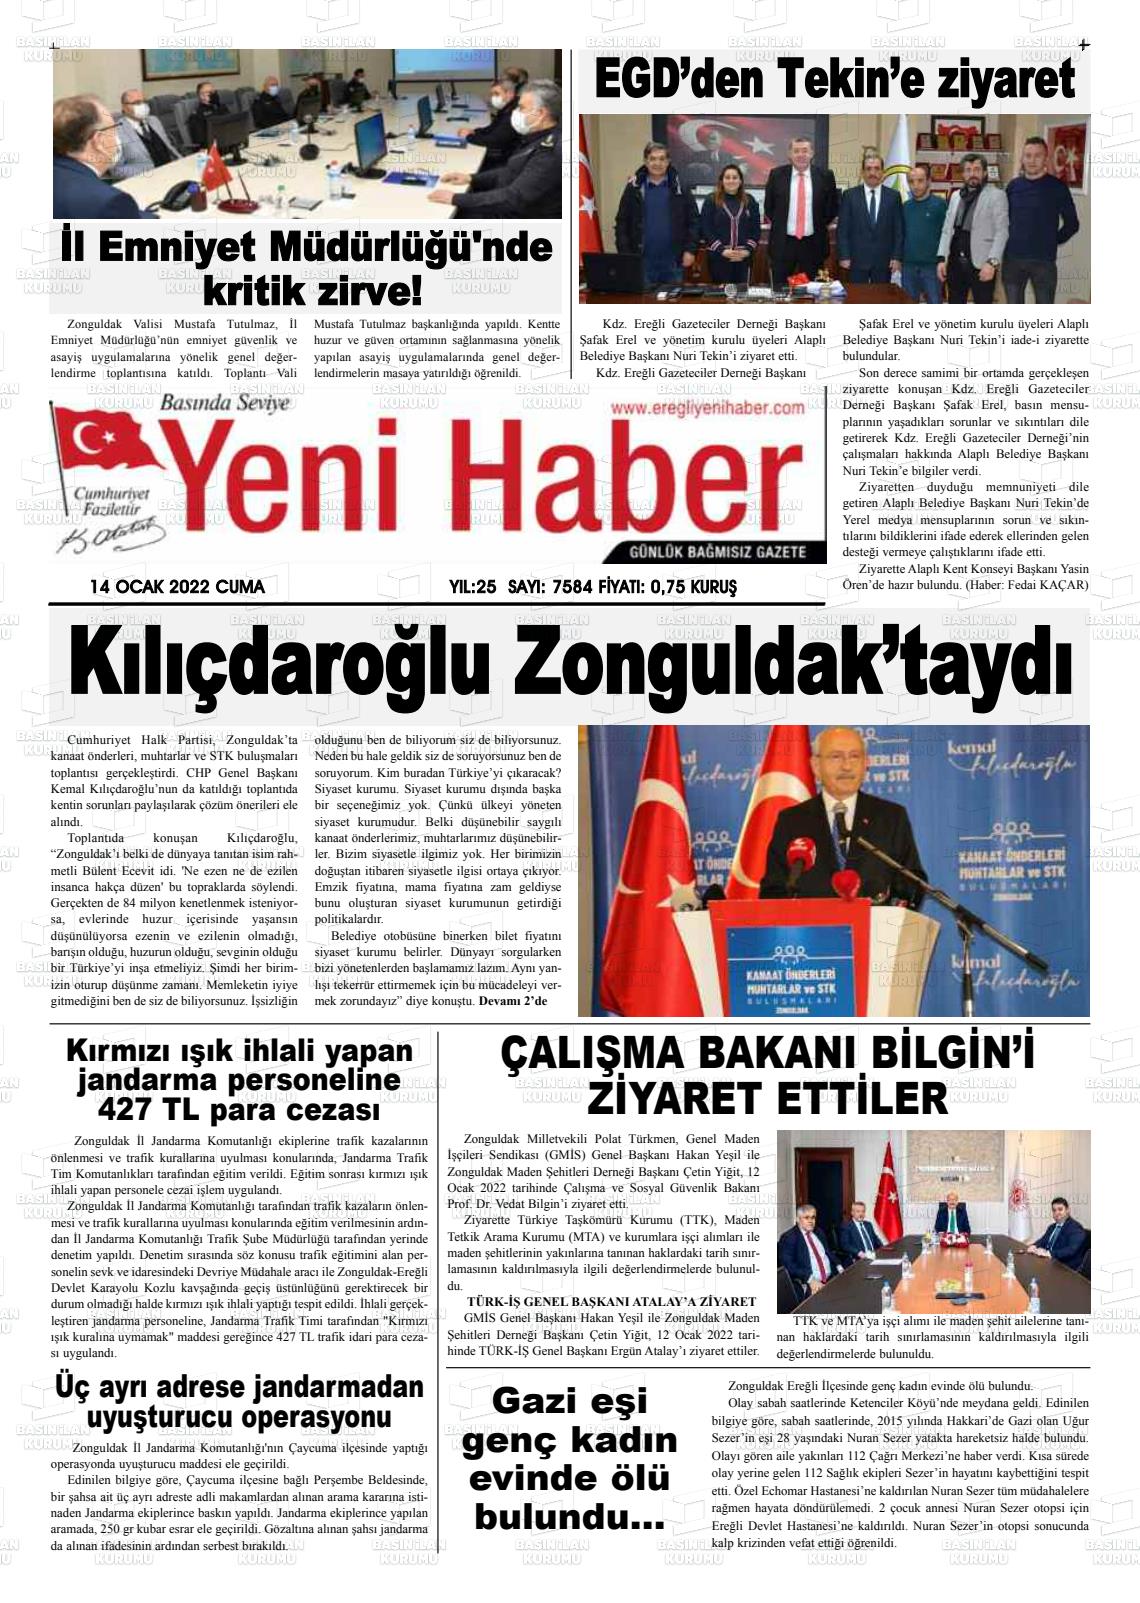 14 Ocak 2022 Ereğli Yeni Haber Gazete Manşeti